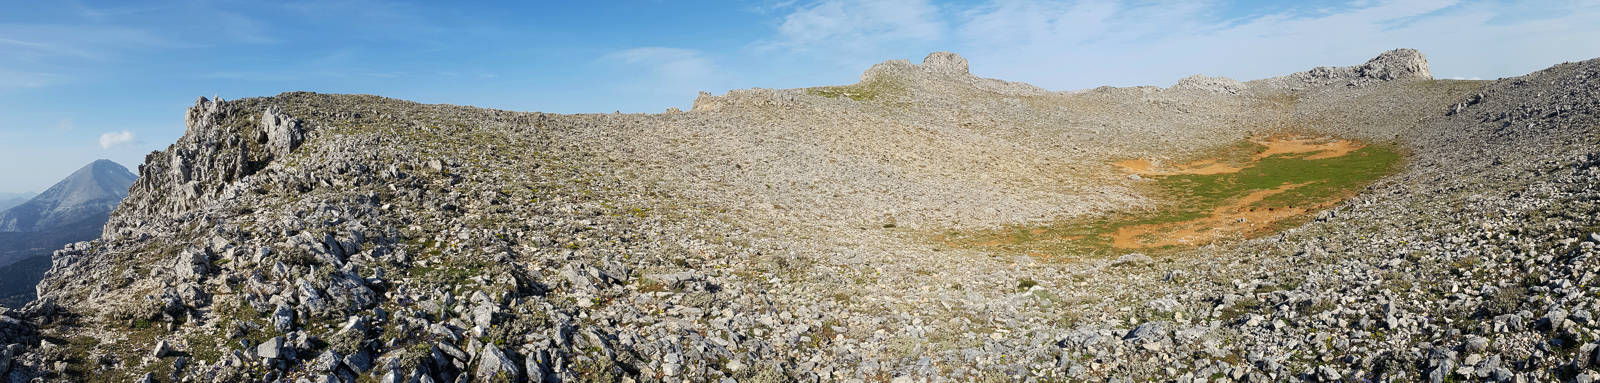 Δίρφυς topoguide: Το καρστικό υψίπεδο του Ξεροβουνίου